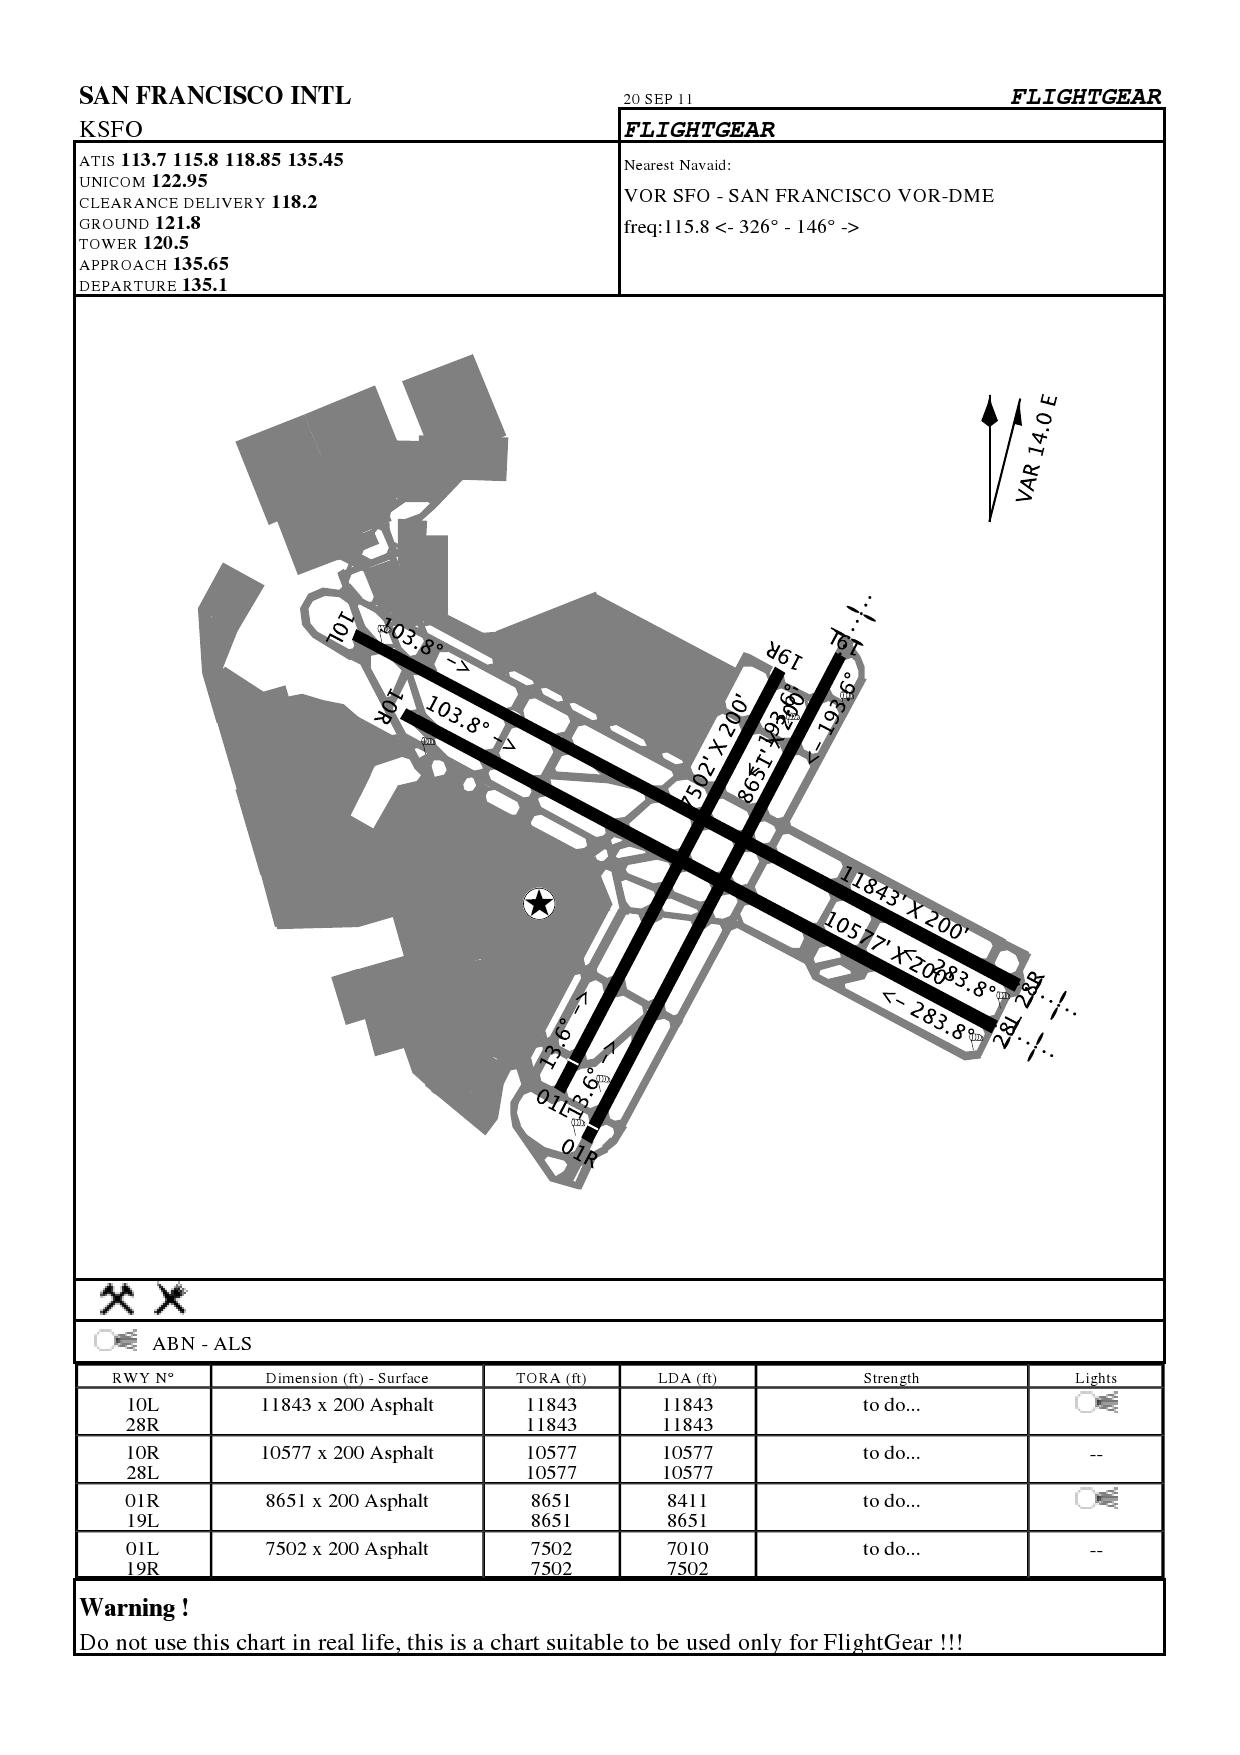 ksfo airport diagram